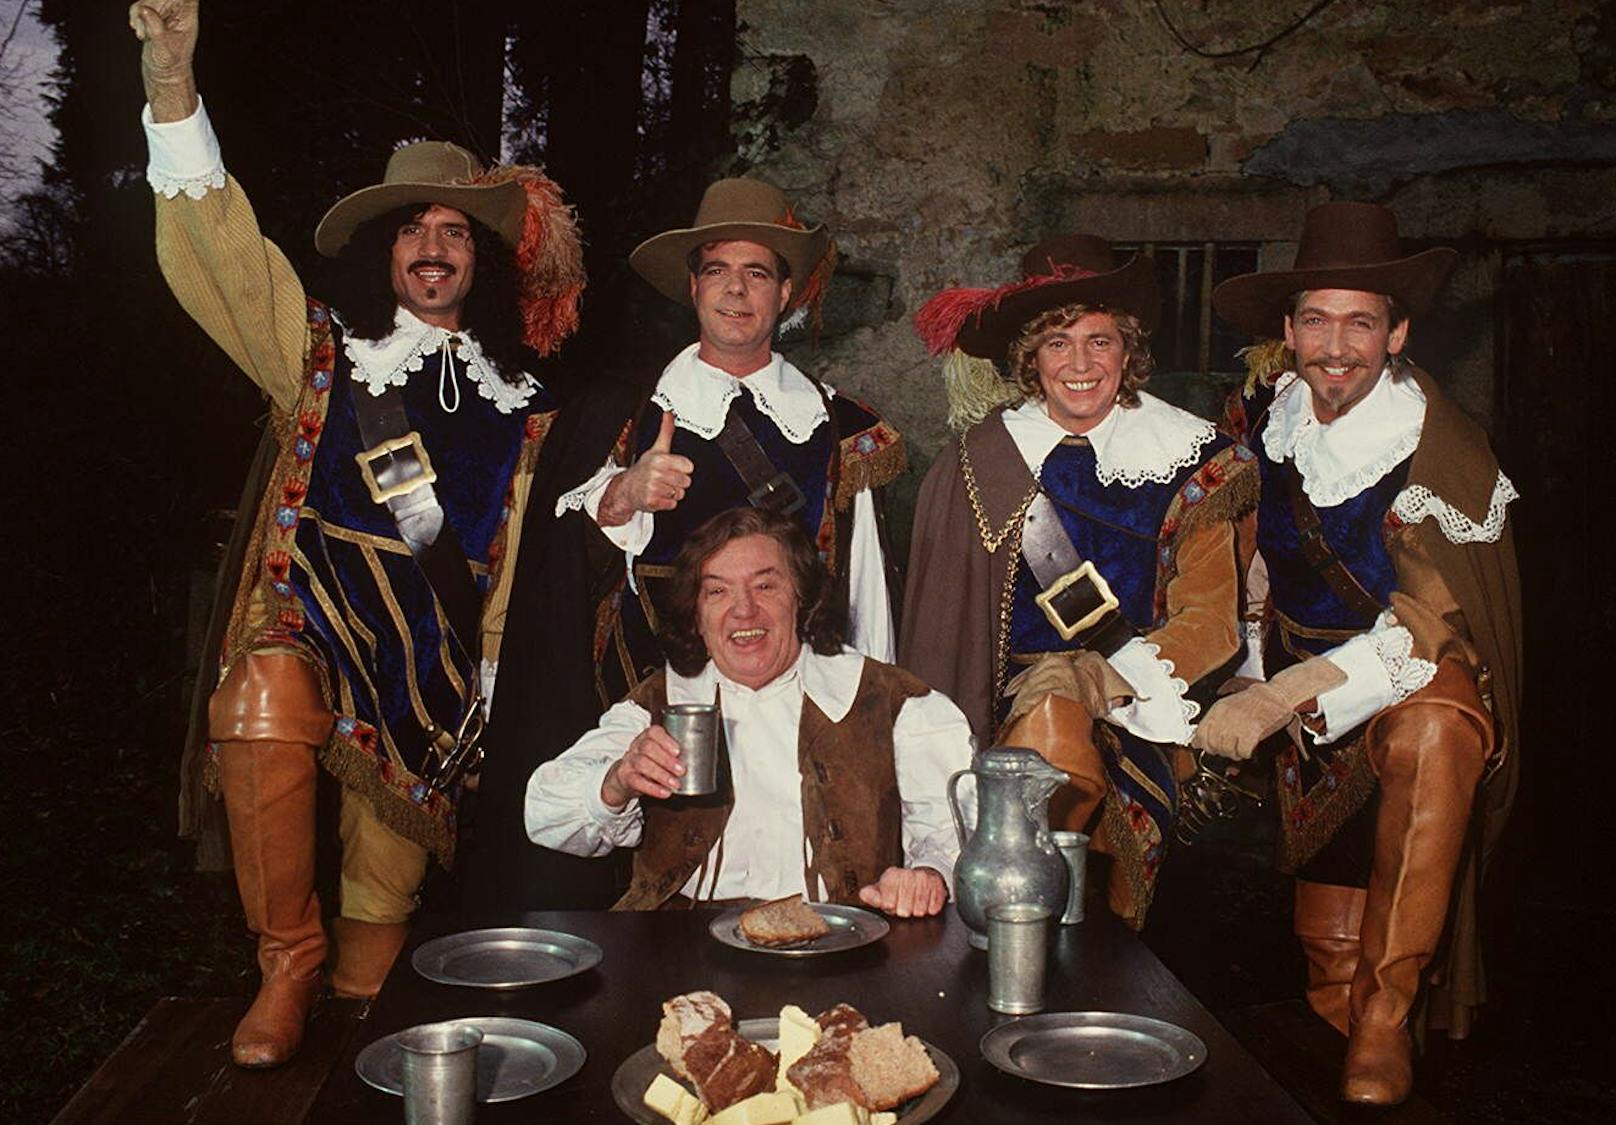 Die Schlager-"Musketiere" Costa Cordalis, Hein Simons, Jürgen Marcus und Olaf Berger mit Moderator Heinz Schenk, 1994